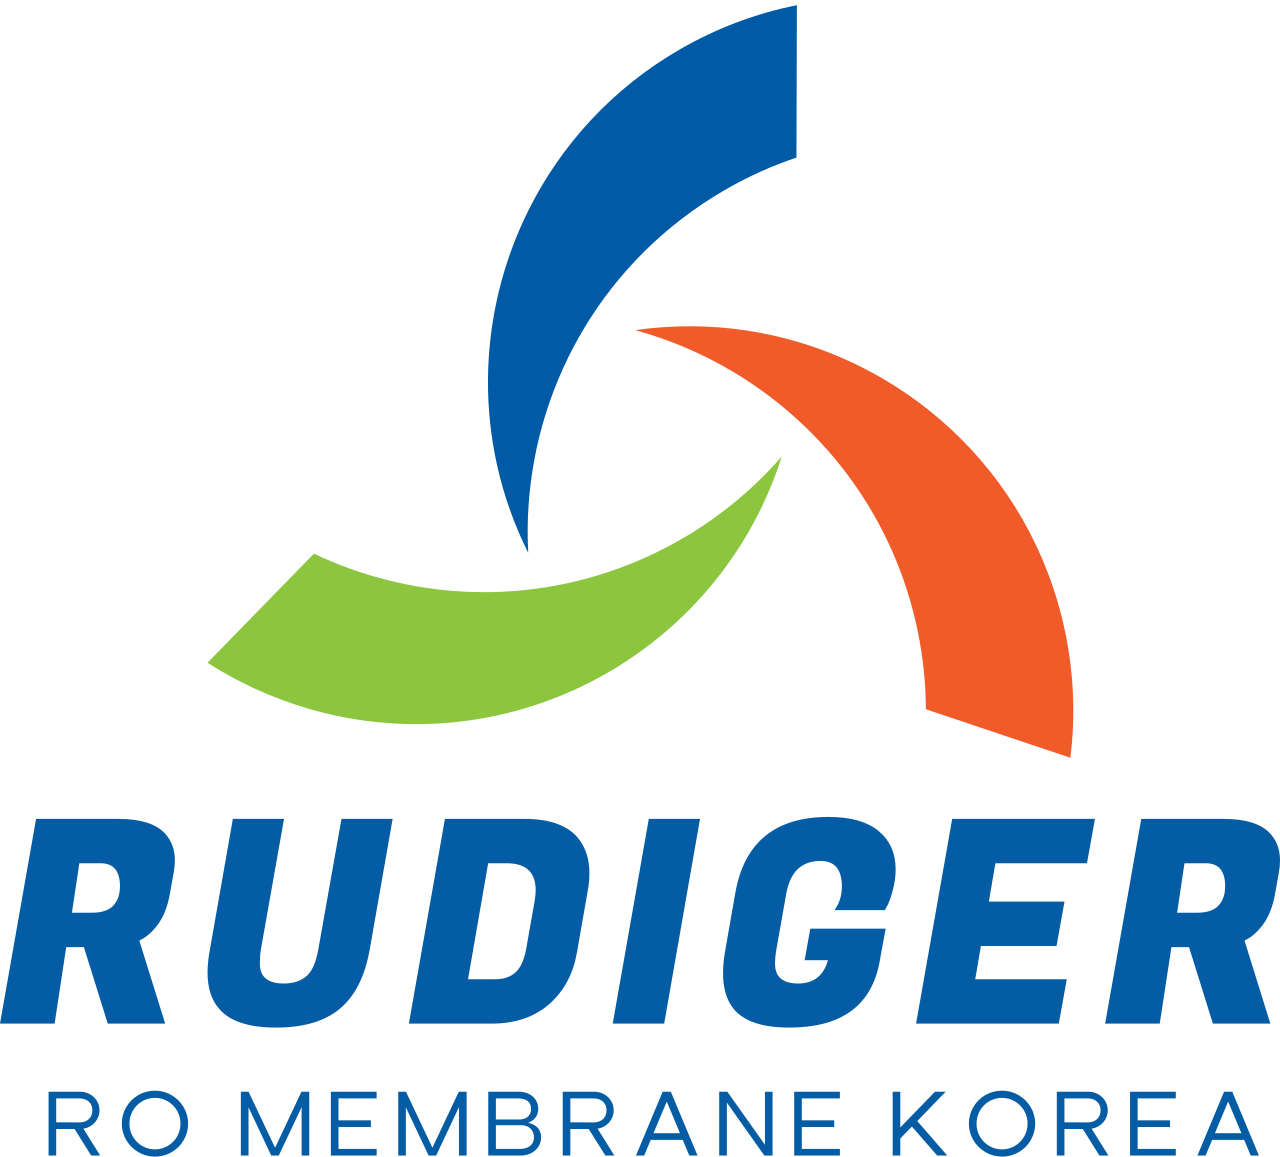 Rudiger's logo